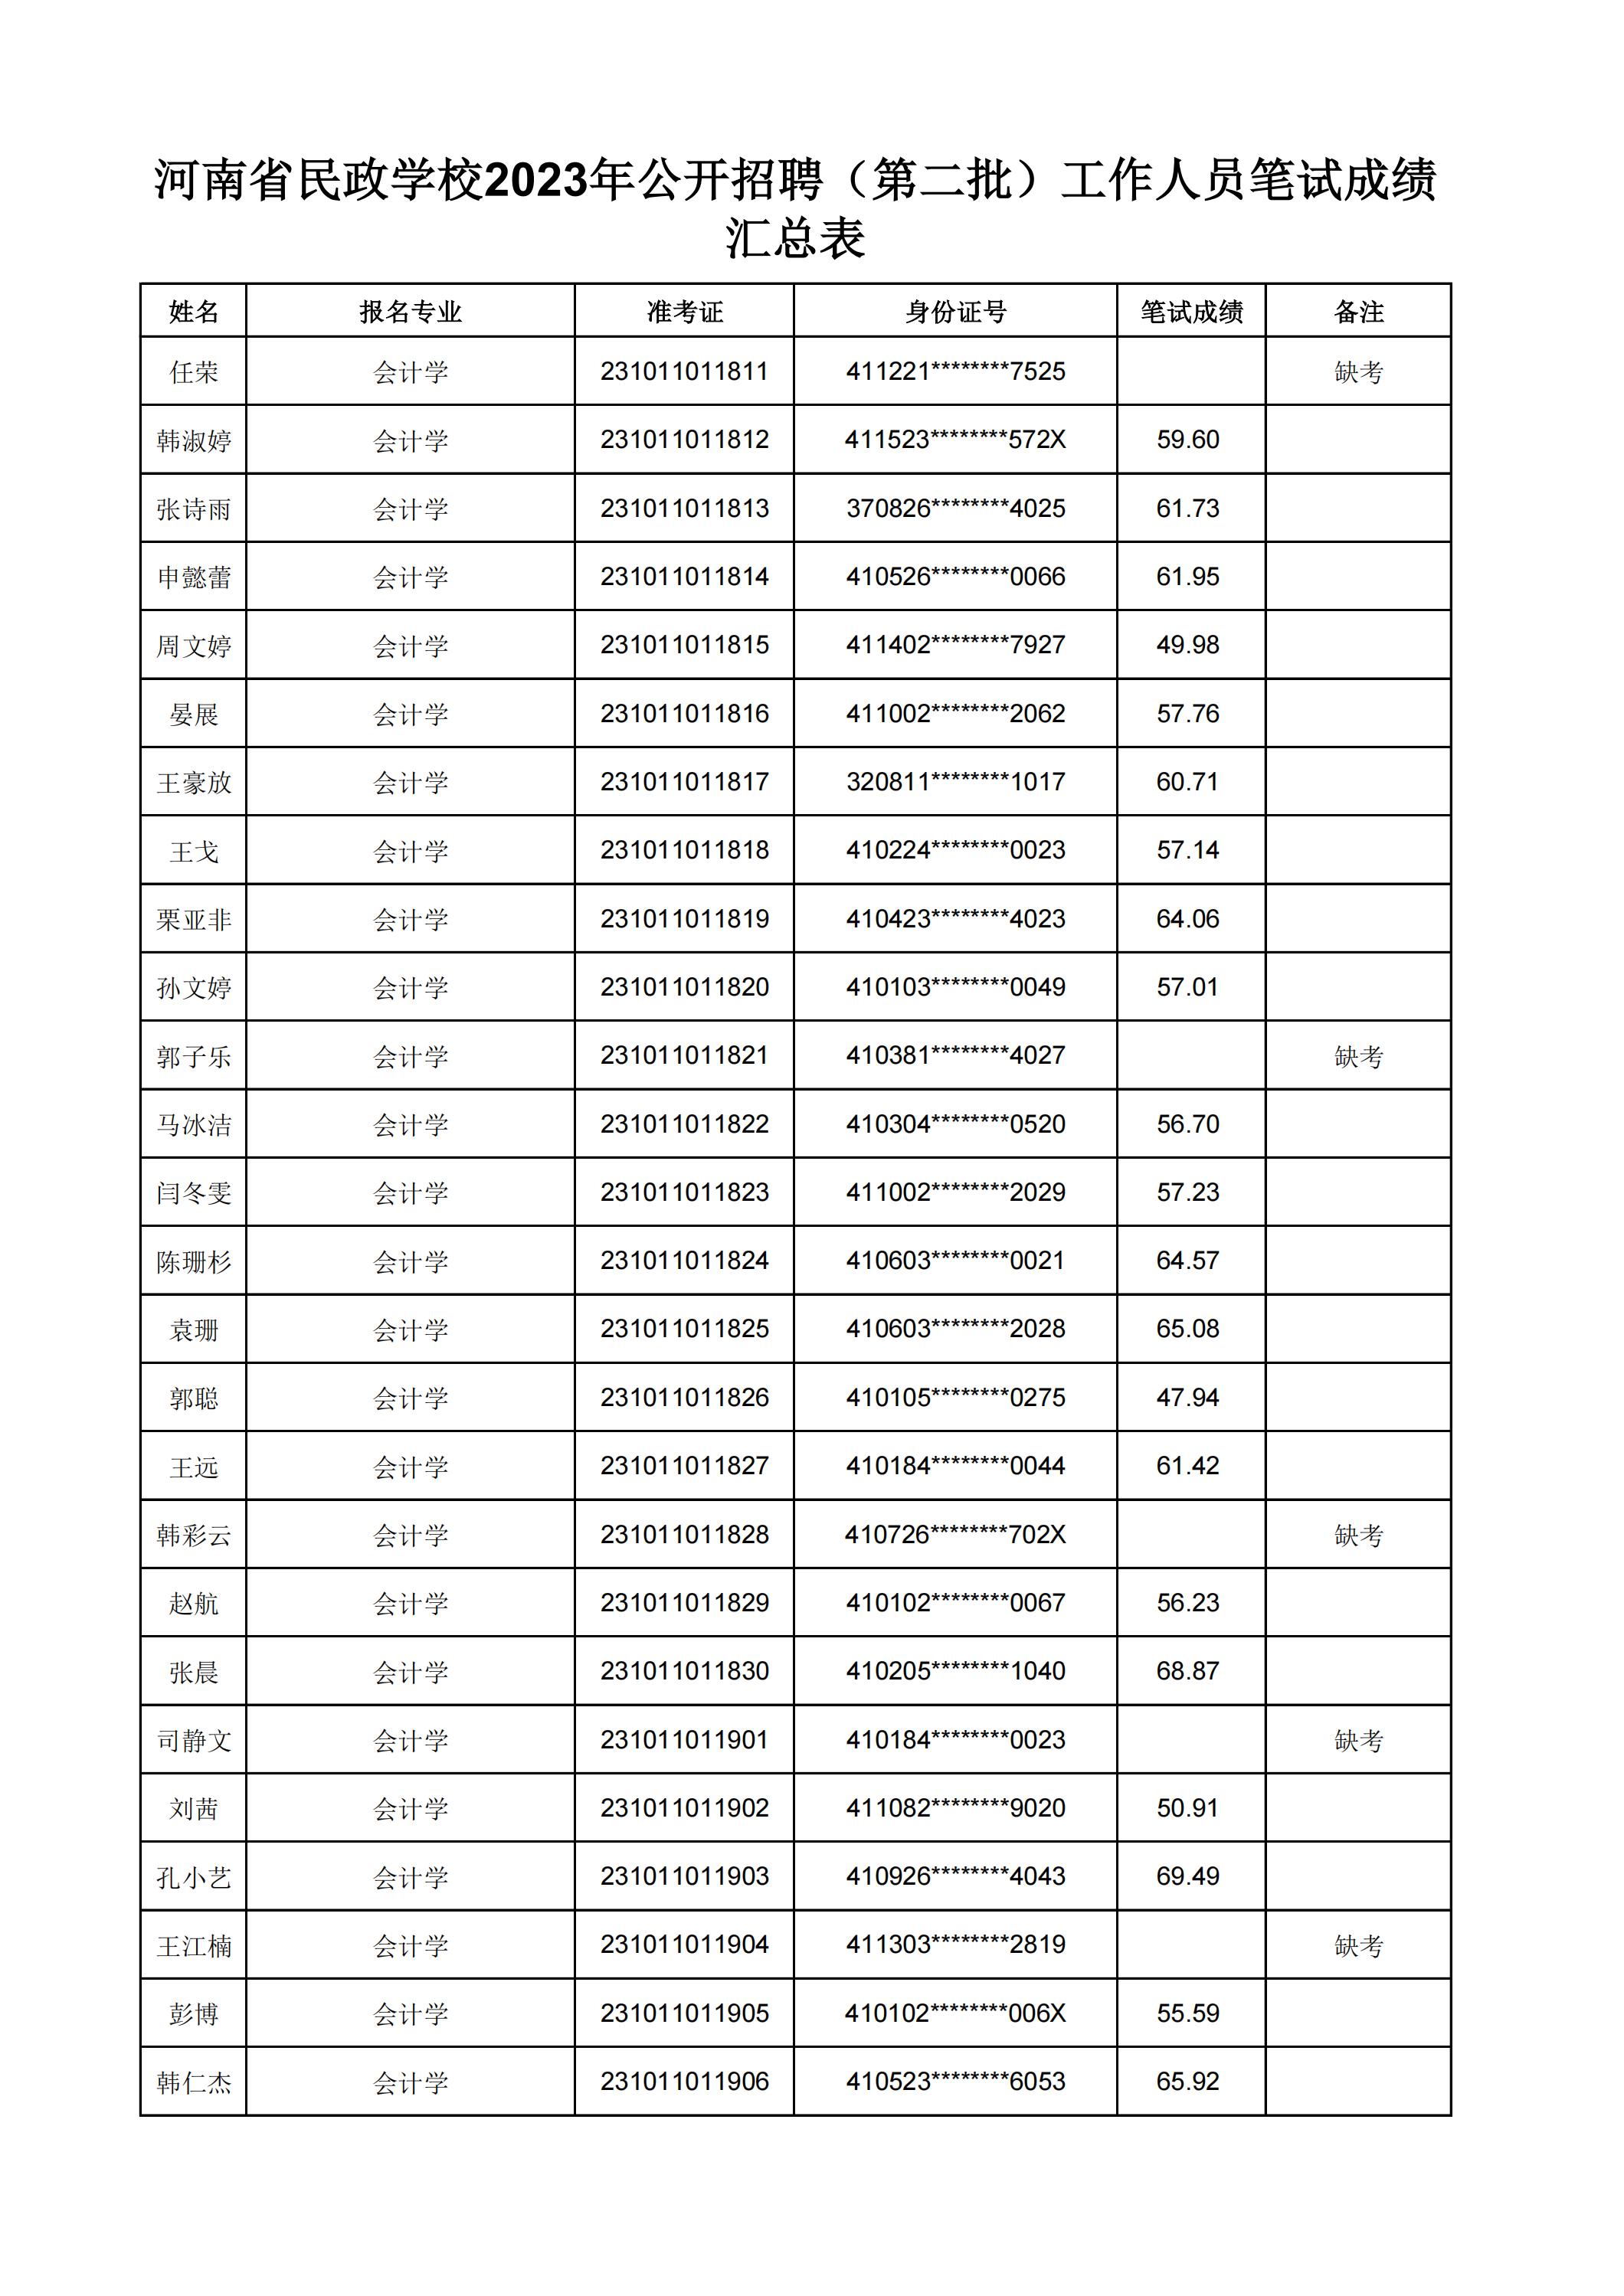 河南省民政学校2023年公开招聘（第二批）工作人员笔试成绩汇总表(2)_20.jpg